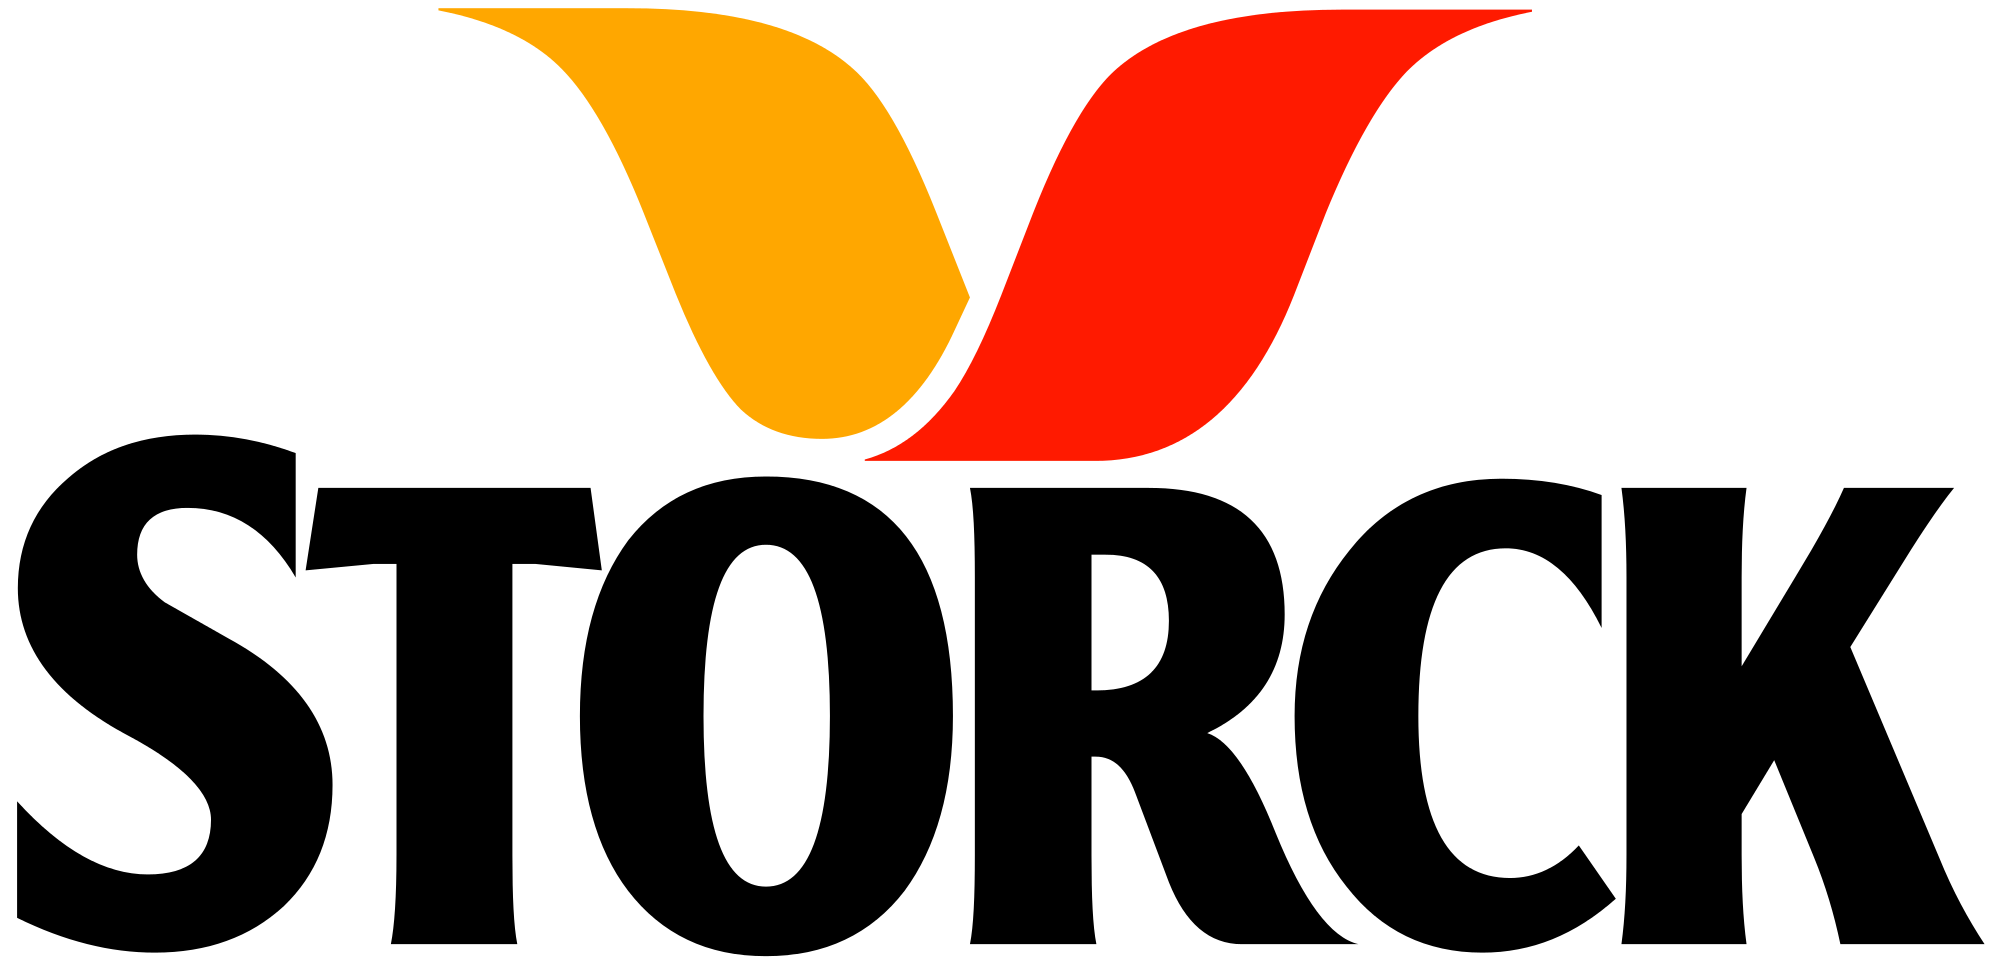 Strock Logo